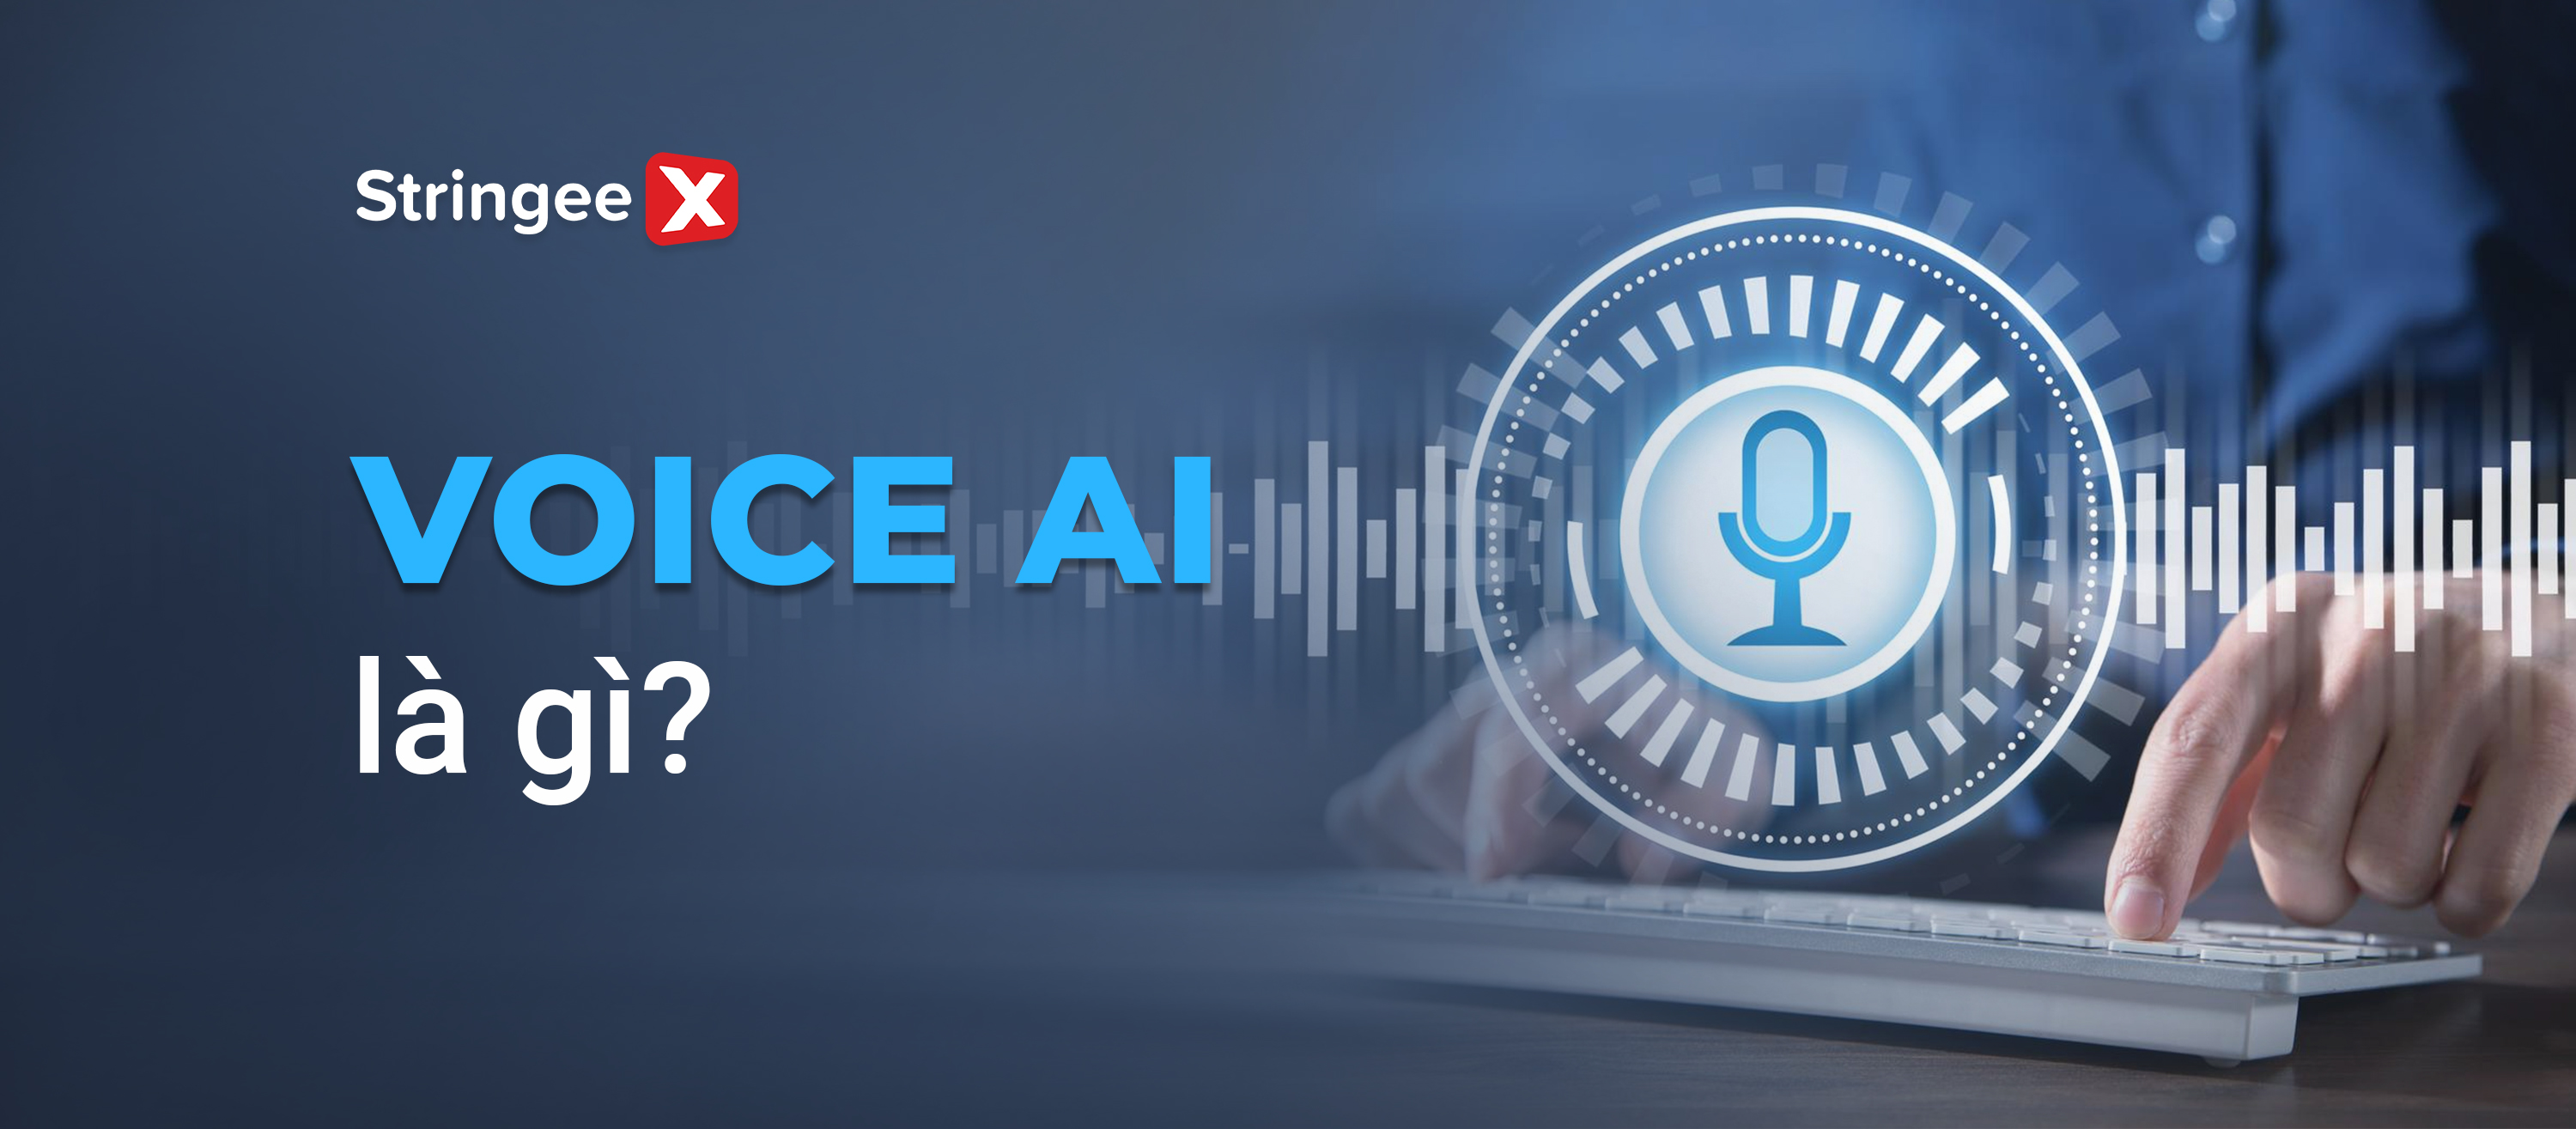 Voice AI là gì? Những lợi ích và cách ứng dụng trong kinh doanh